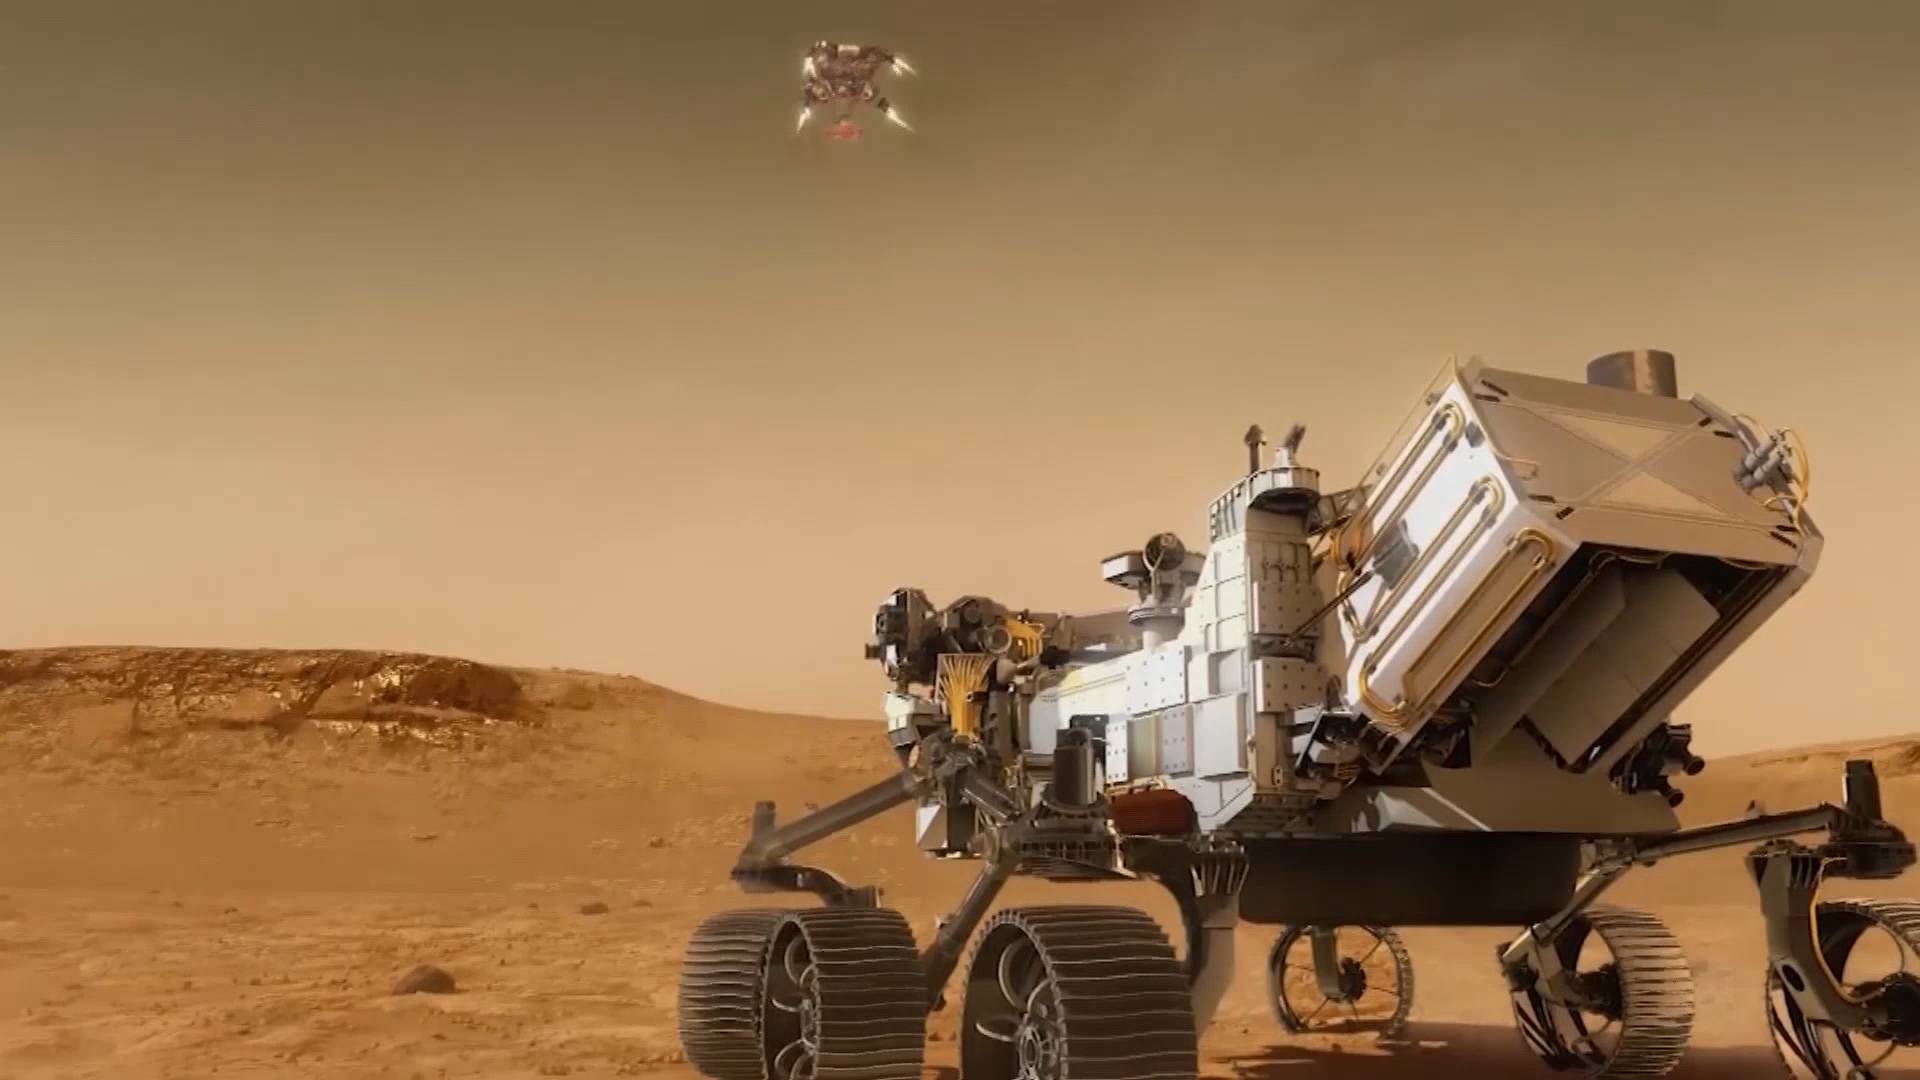 43秒美国毅力号火星车即将登陆火星寻找火星生命迹象